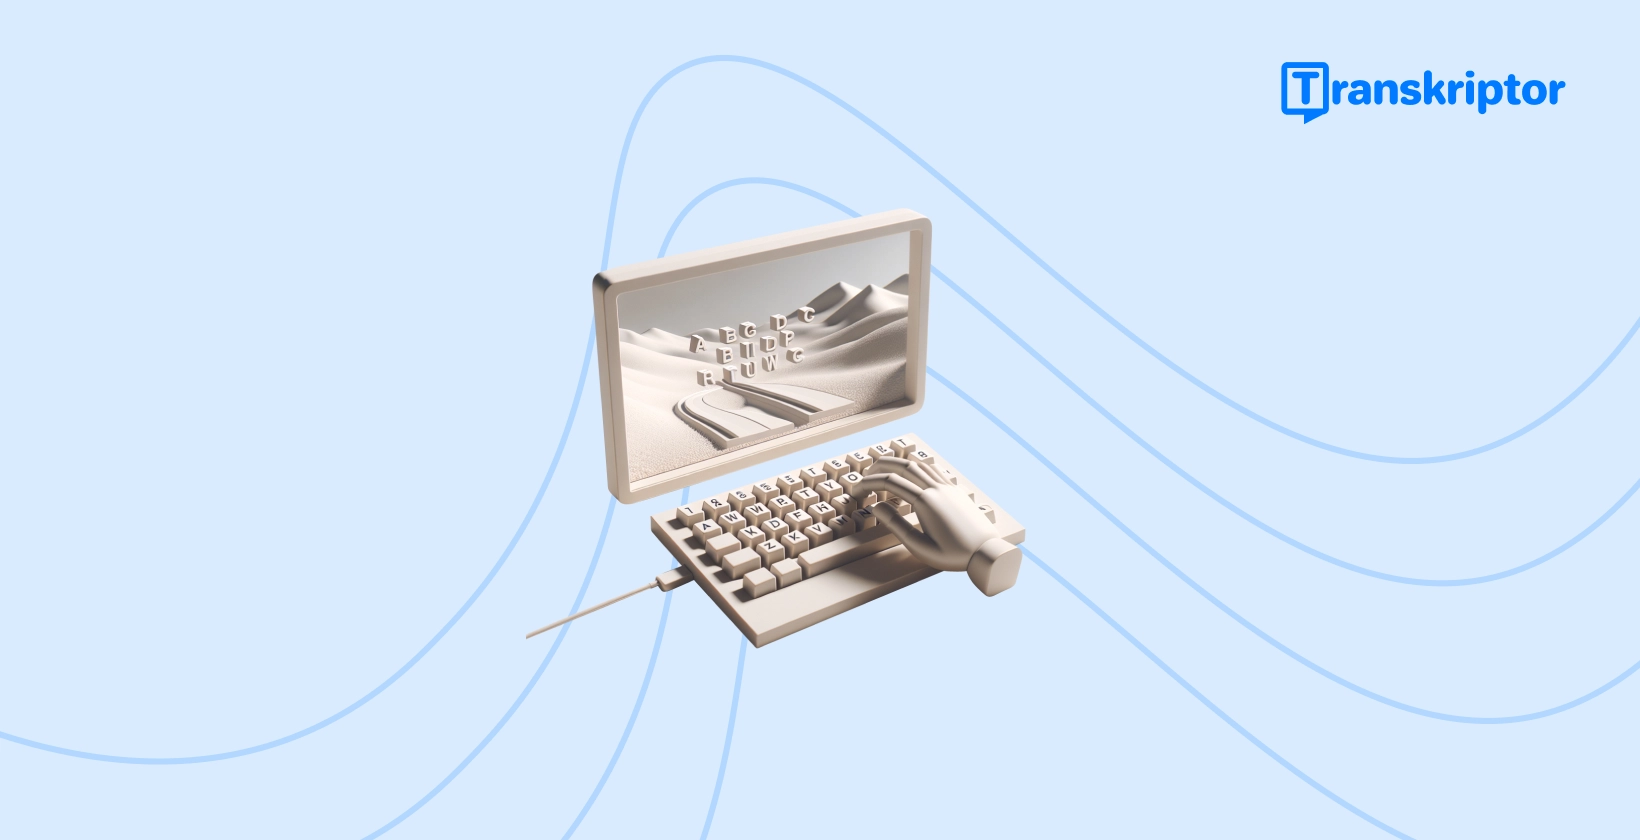 En vintage skrivemaskin med nøkler som danner et landskap på papirrullen, som representerer den kreative prosessen med å legge til engasjerende bildetekster i videoene TikTok.